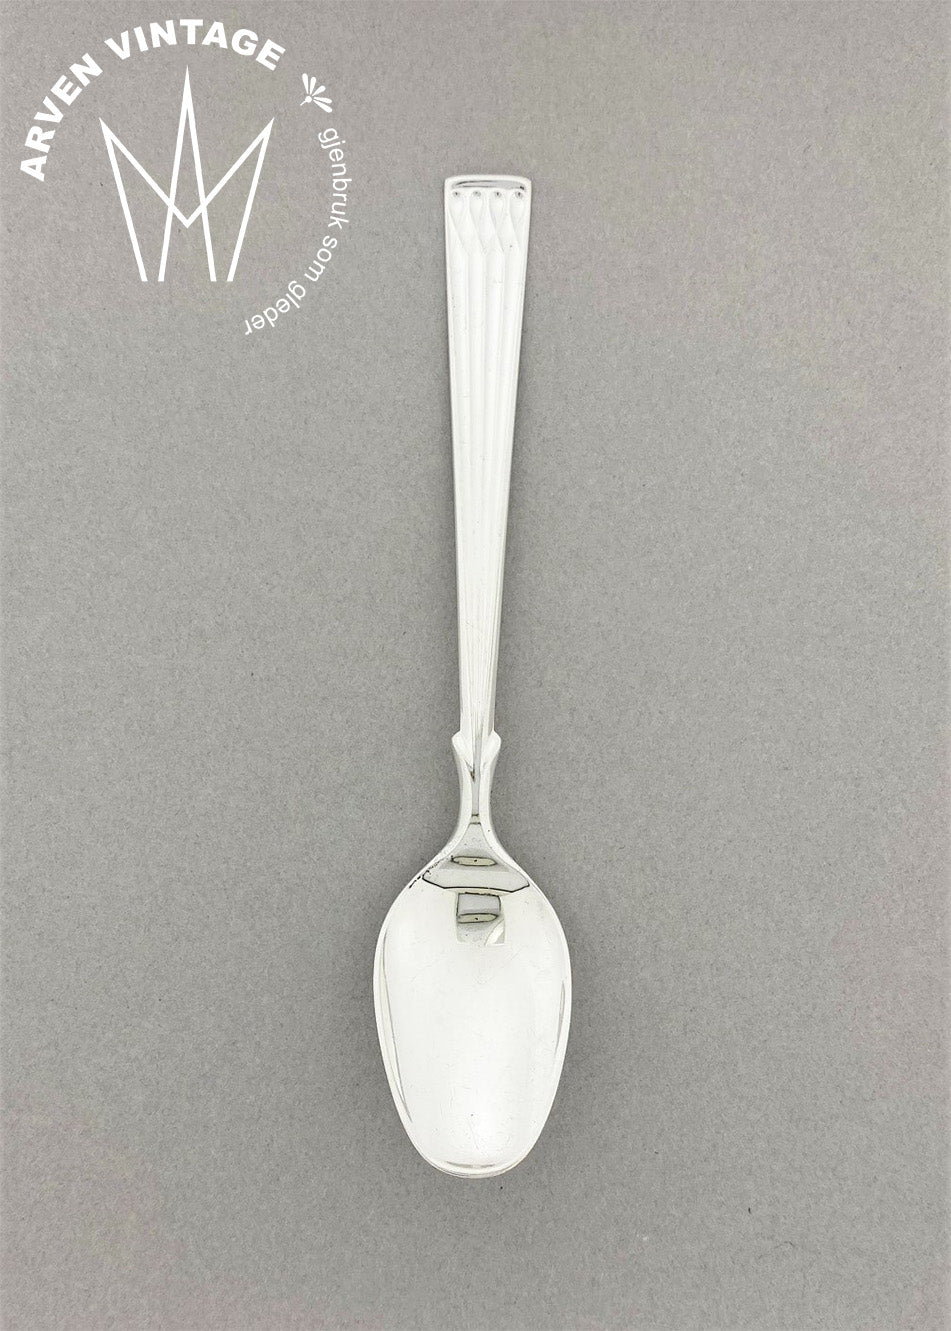 Vintage Heirloom silver teaspoon